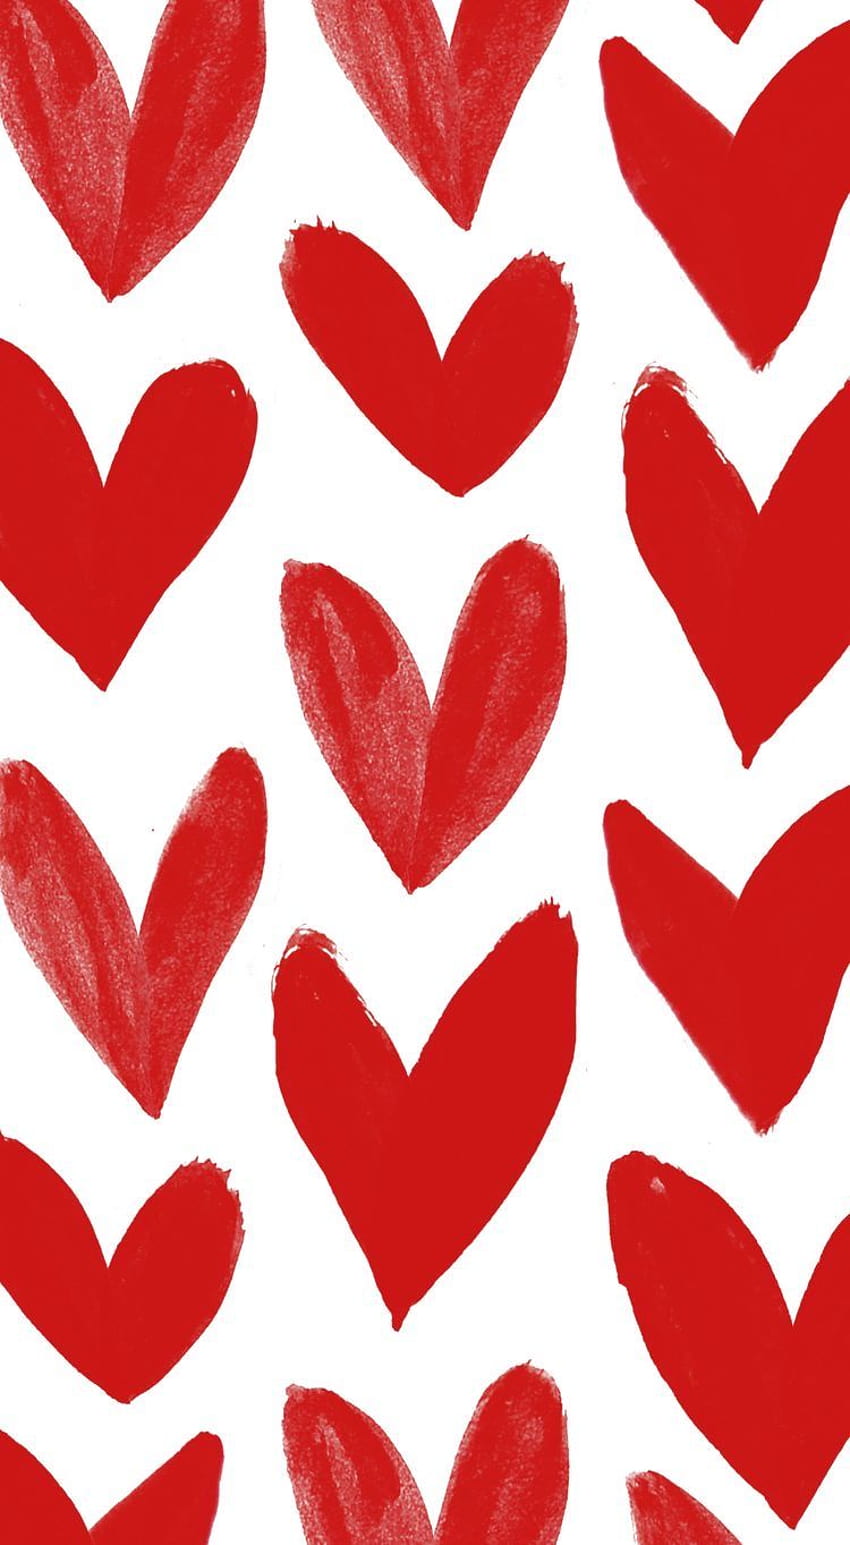 Valentine năm nay sẽ không thể thiếu mẫu trái tim đỏ và trắng. Với sự kết hợp khéo léo giữa hai màu, thiết kế này sẽ tạo ra một không gian lãng mạn, đặc biệt trong dịp kỷ niệm tình yêu. Hãy xem hình ảnh để cảm nhận điều đó!